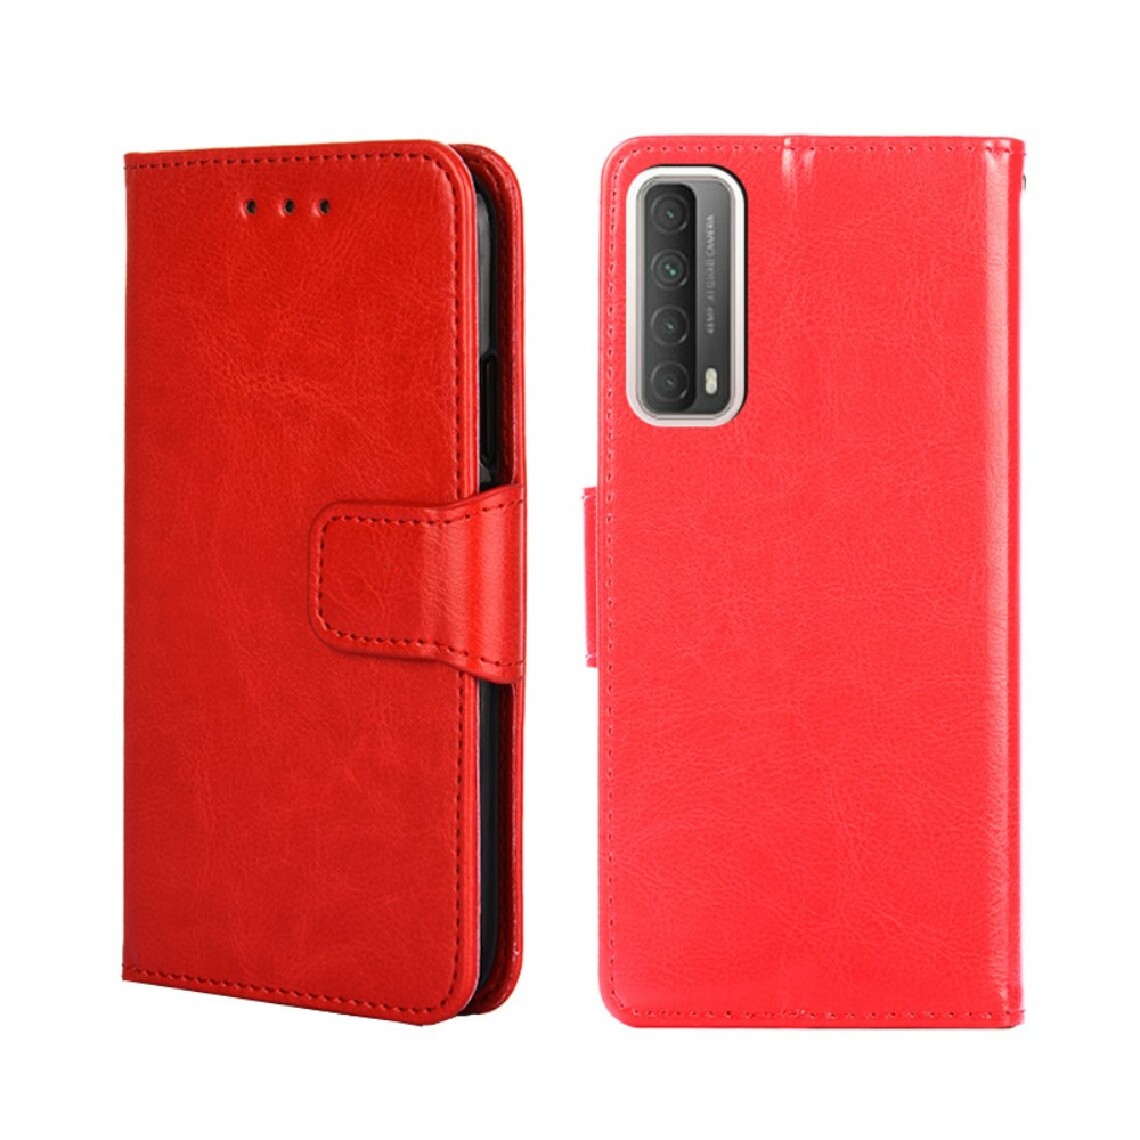 Other - Etui en PU texture de cheval fou avec smartphone rouge pour votre Huawei P smart 2021/Y7a - Coque, étui smartphone